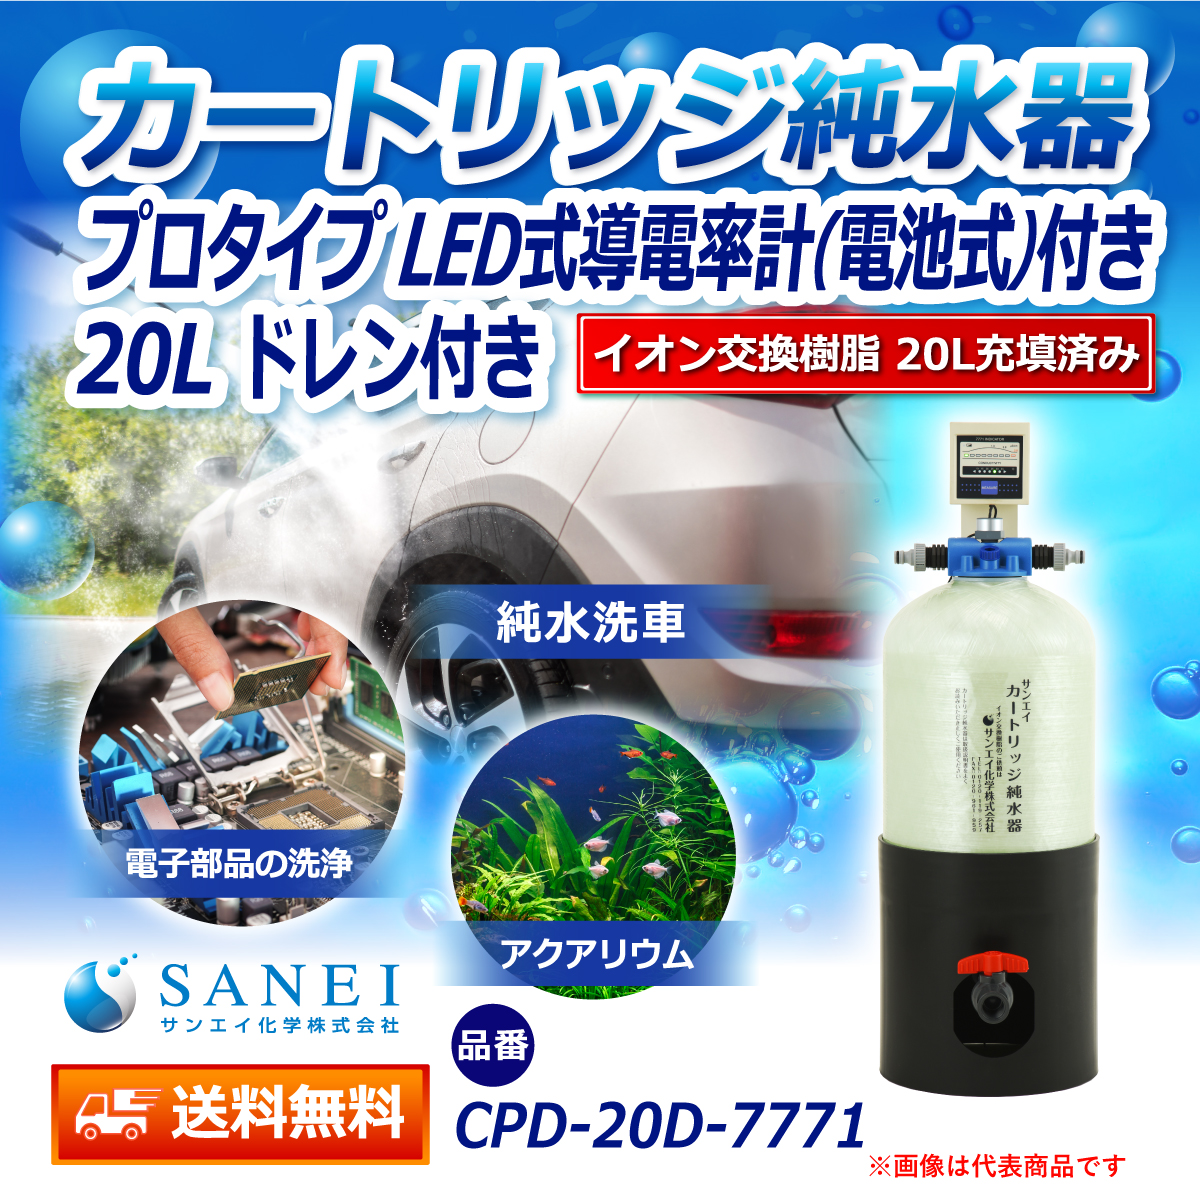 サンエイ化学 カートリッジ純水器 20L プロタイプ LED式導電率計(電池